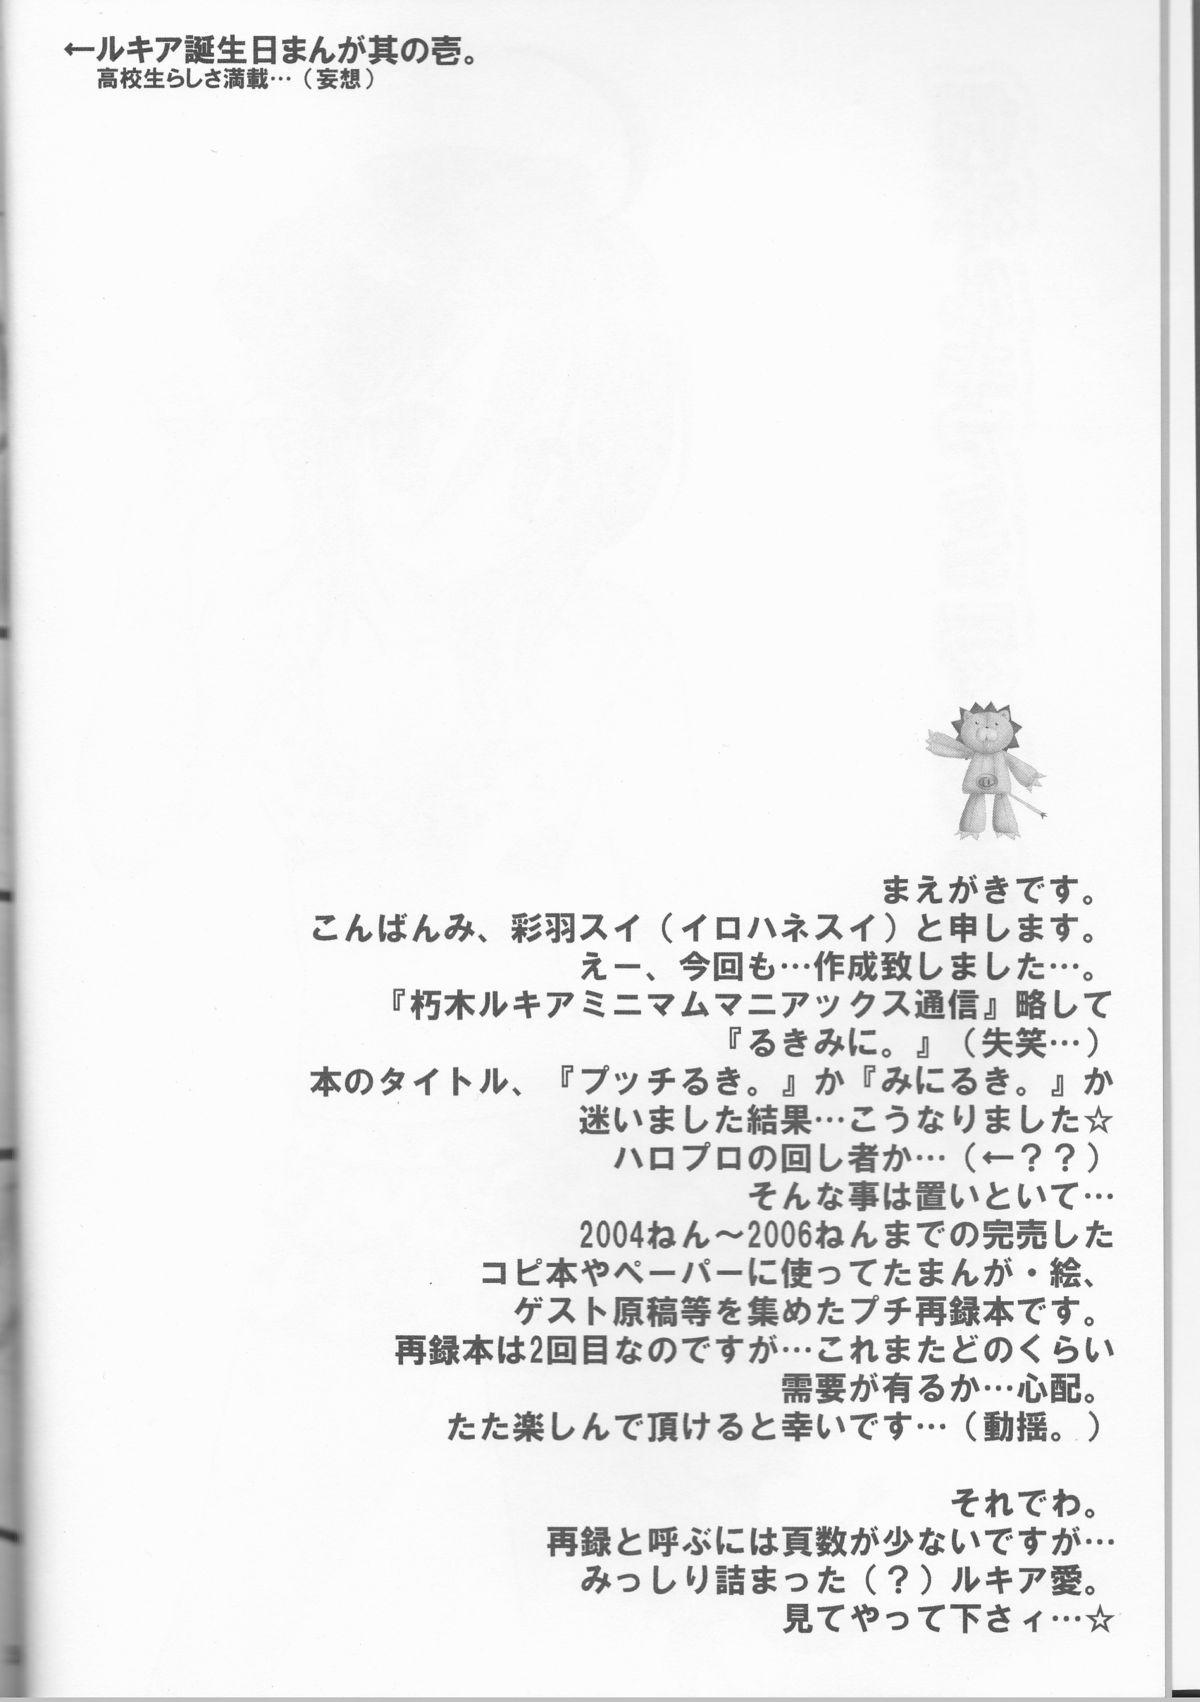 4some Rukia Kuchiki Minimum Maniax File - Bleach Naked - Page 4